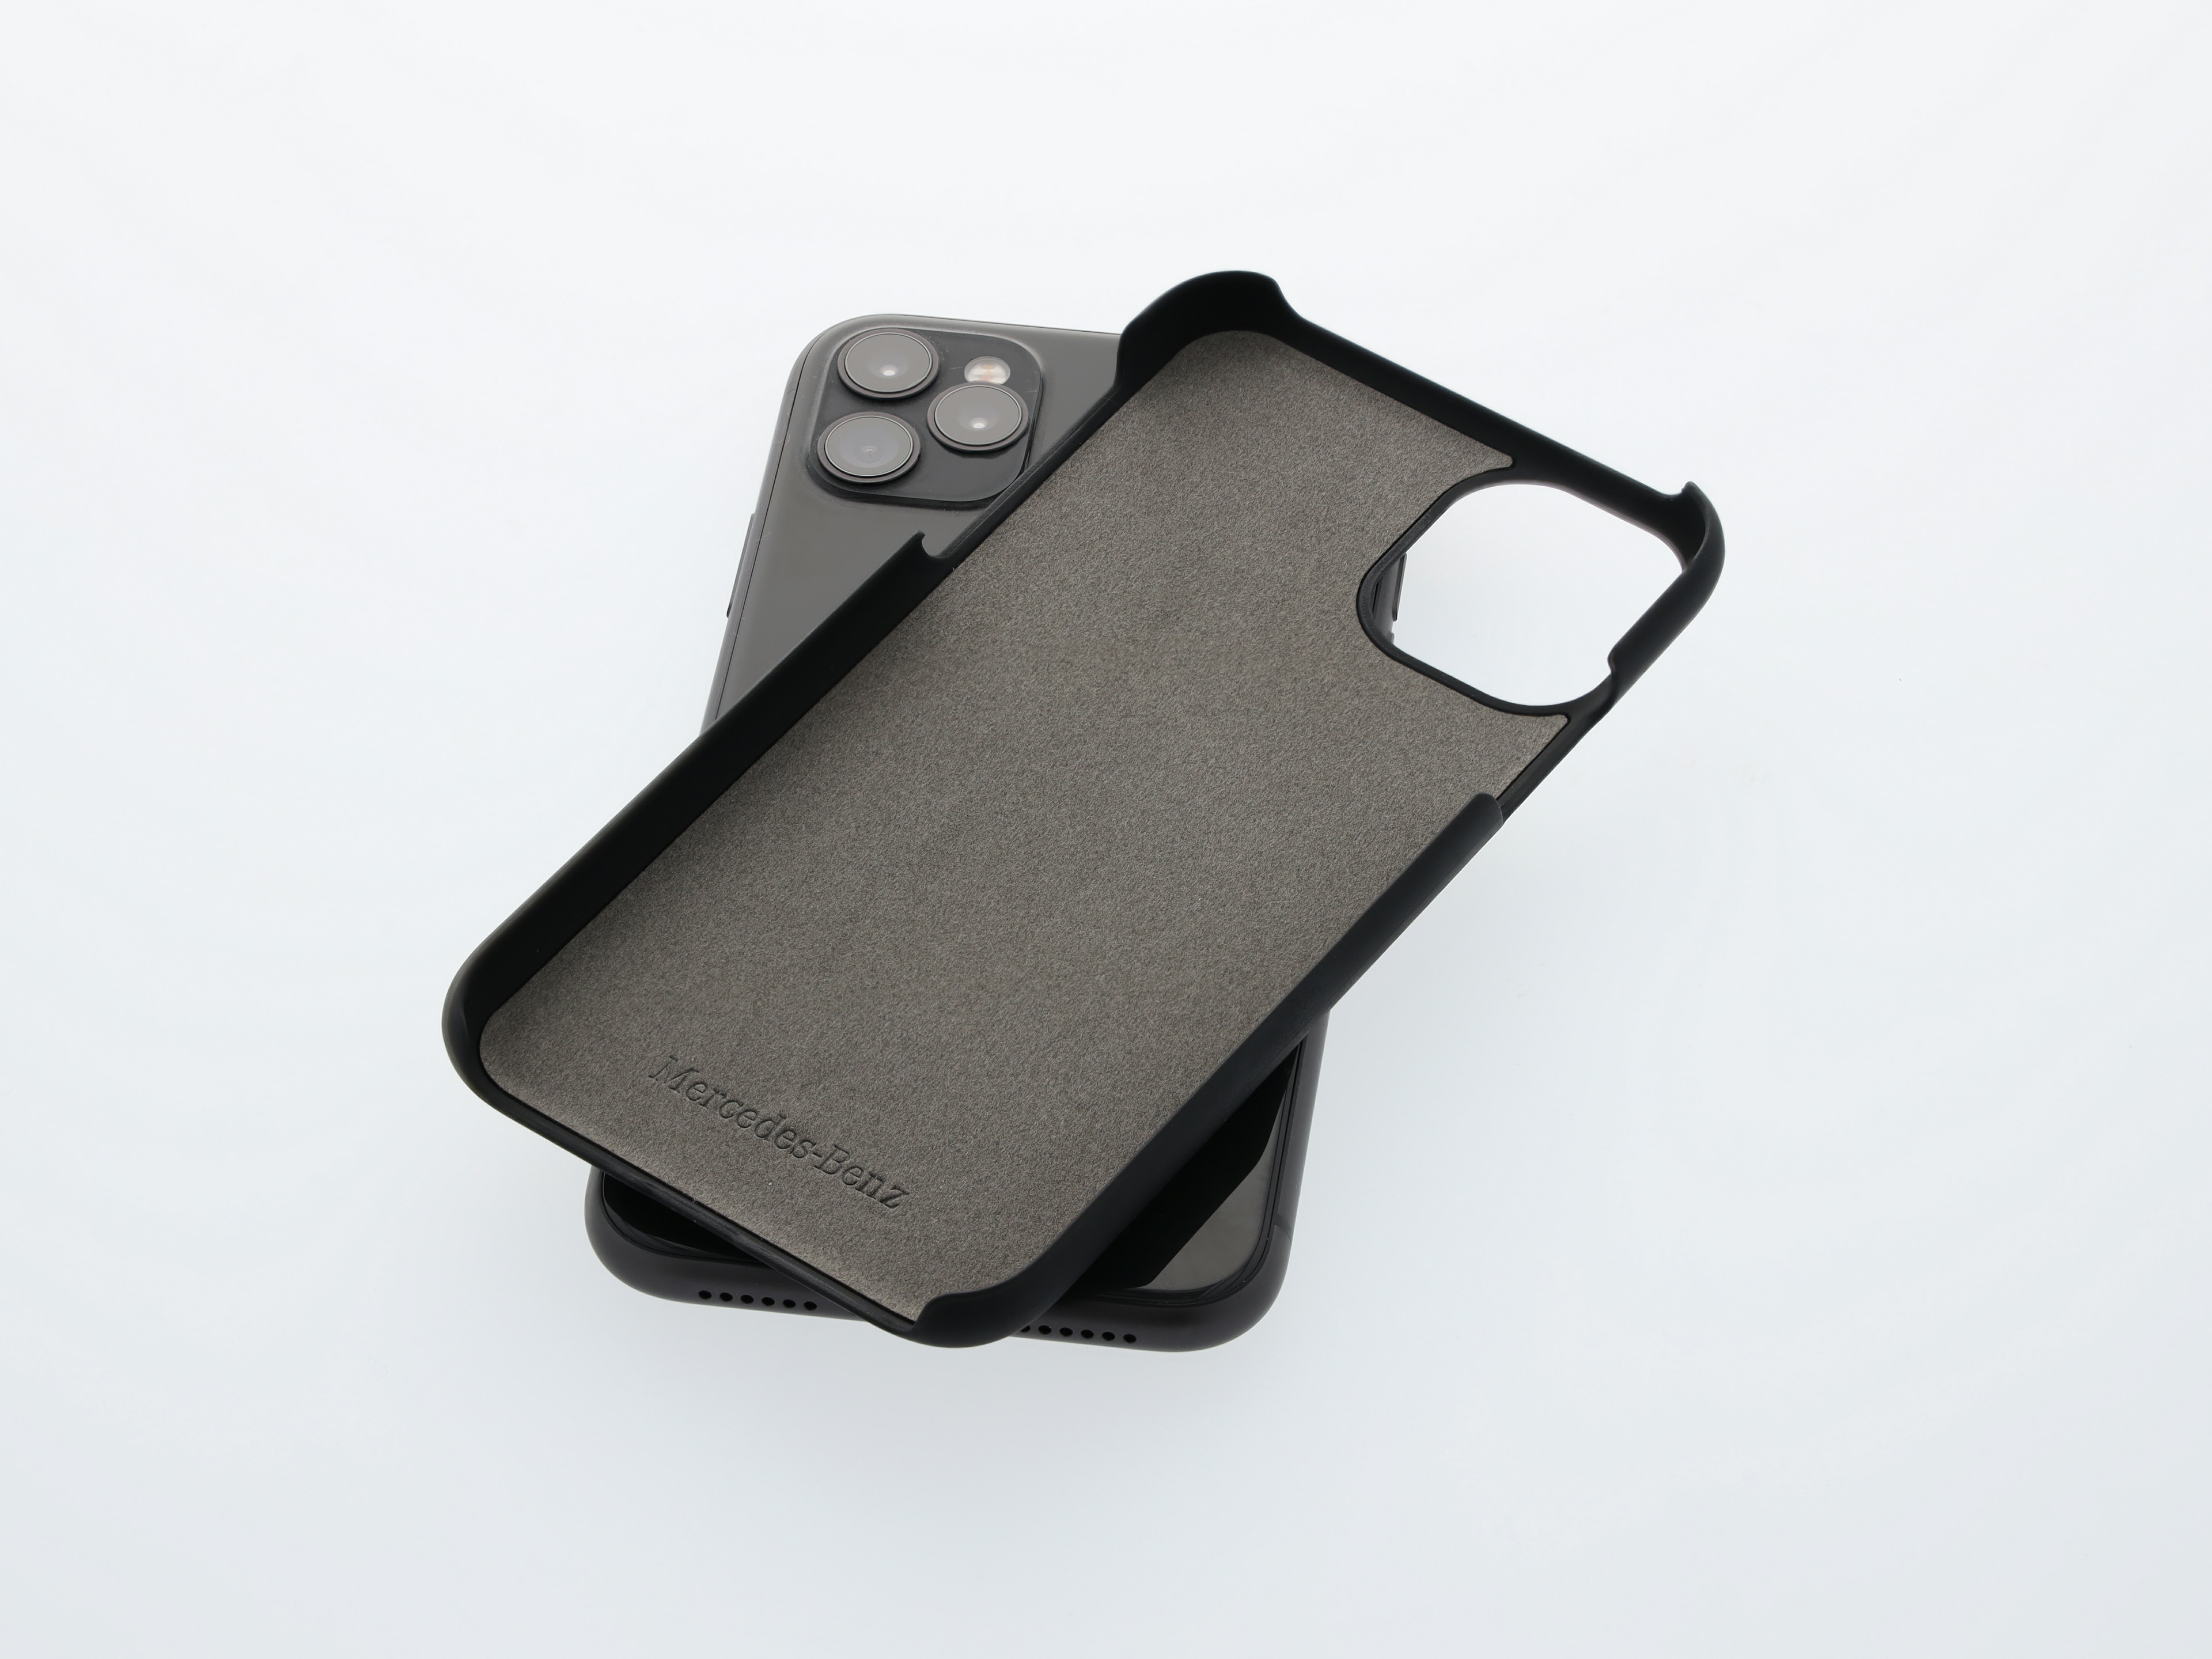 Hülle für iPhone® 11 Pro - schwarz, Polycarbonat / Metall